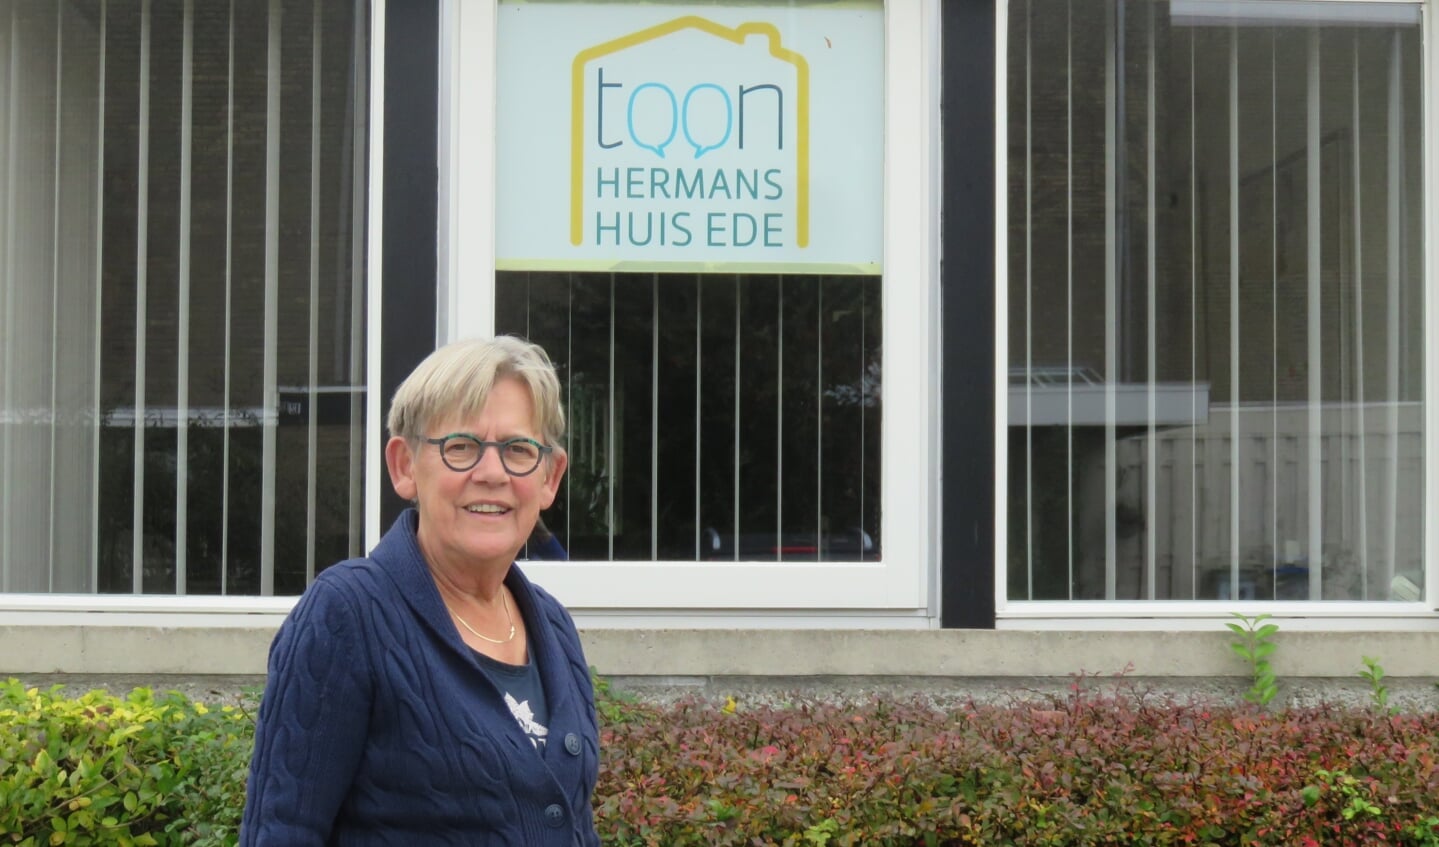 Regien de Bruyn is een van de vele vrijwilligers van het Toon Hermanshuis. Zij zetten zich in voor mensen die met kanker te maken krijgen.